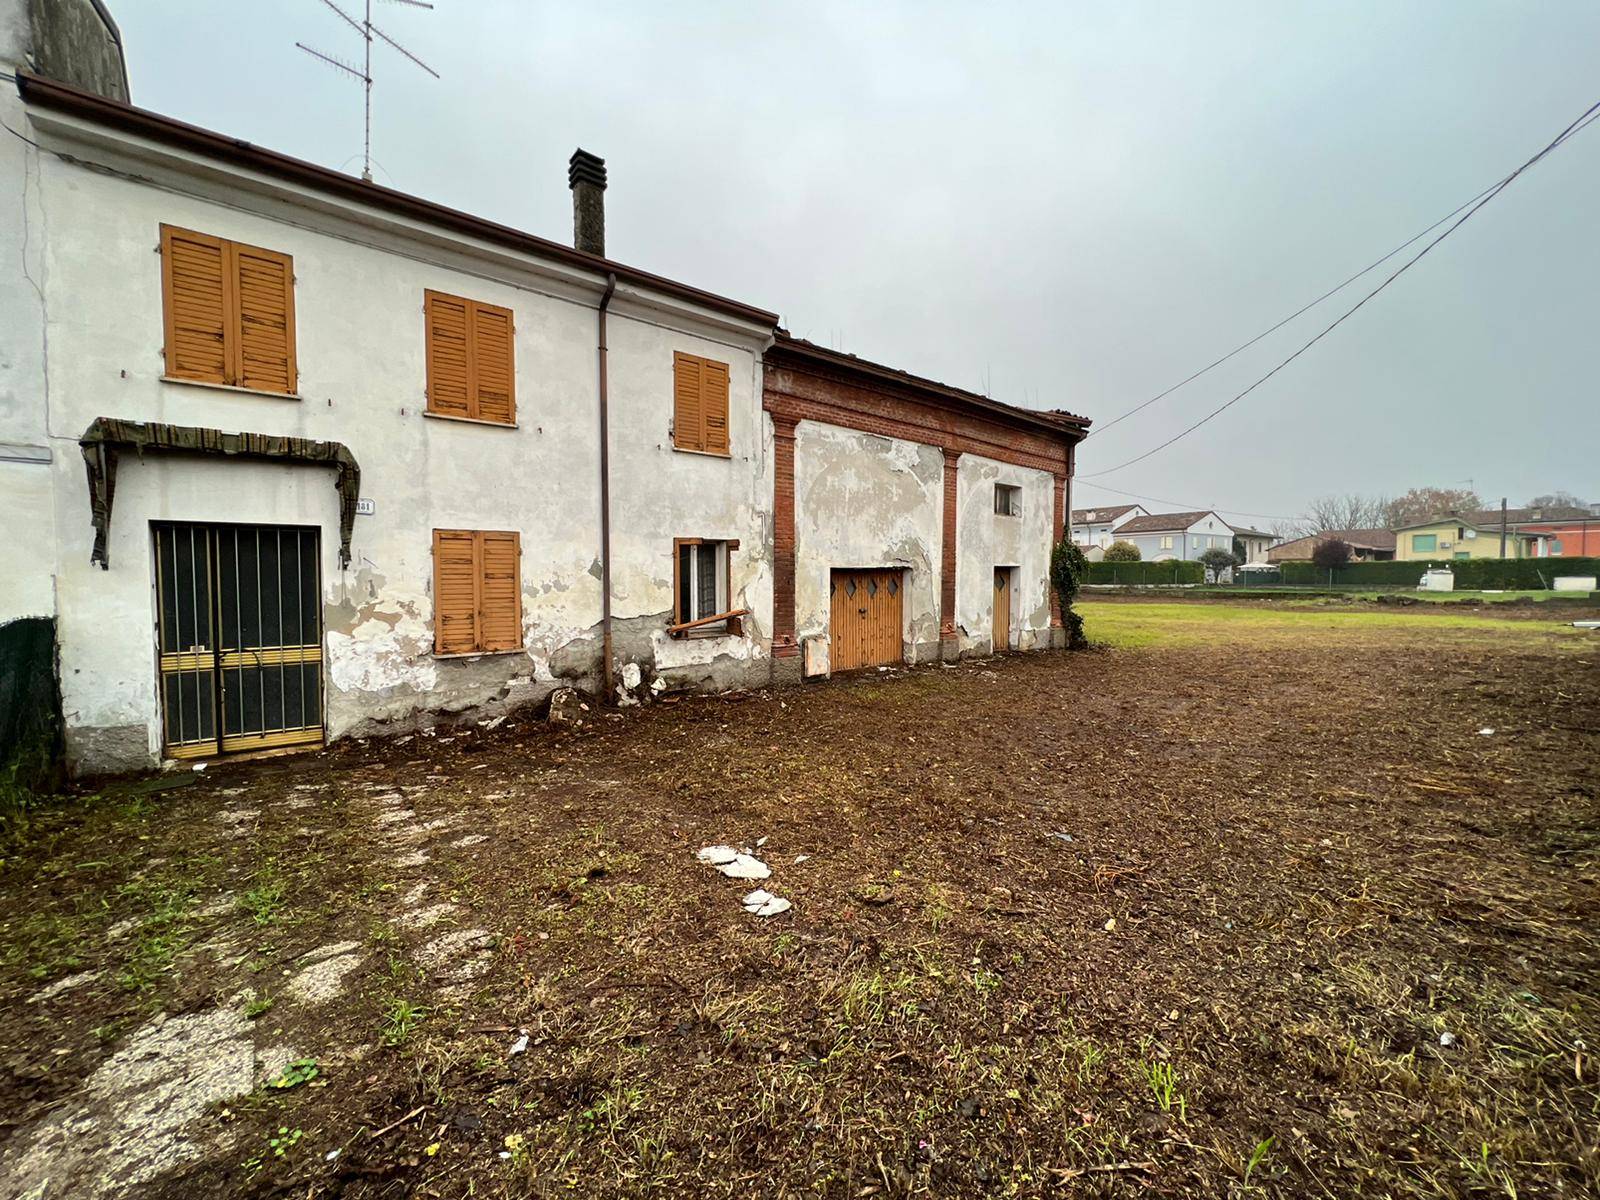 Rustico / Casale in vendita a Luzzara, 5 locali, prezzo € 100.000 | PortaleAgenzieImmobiliari.it